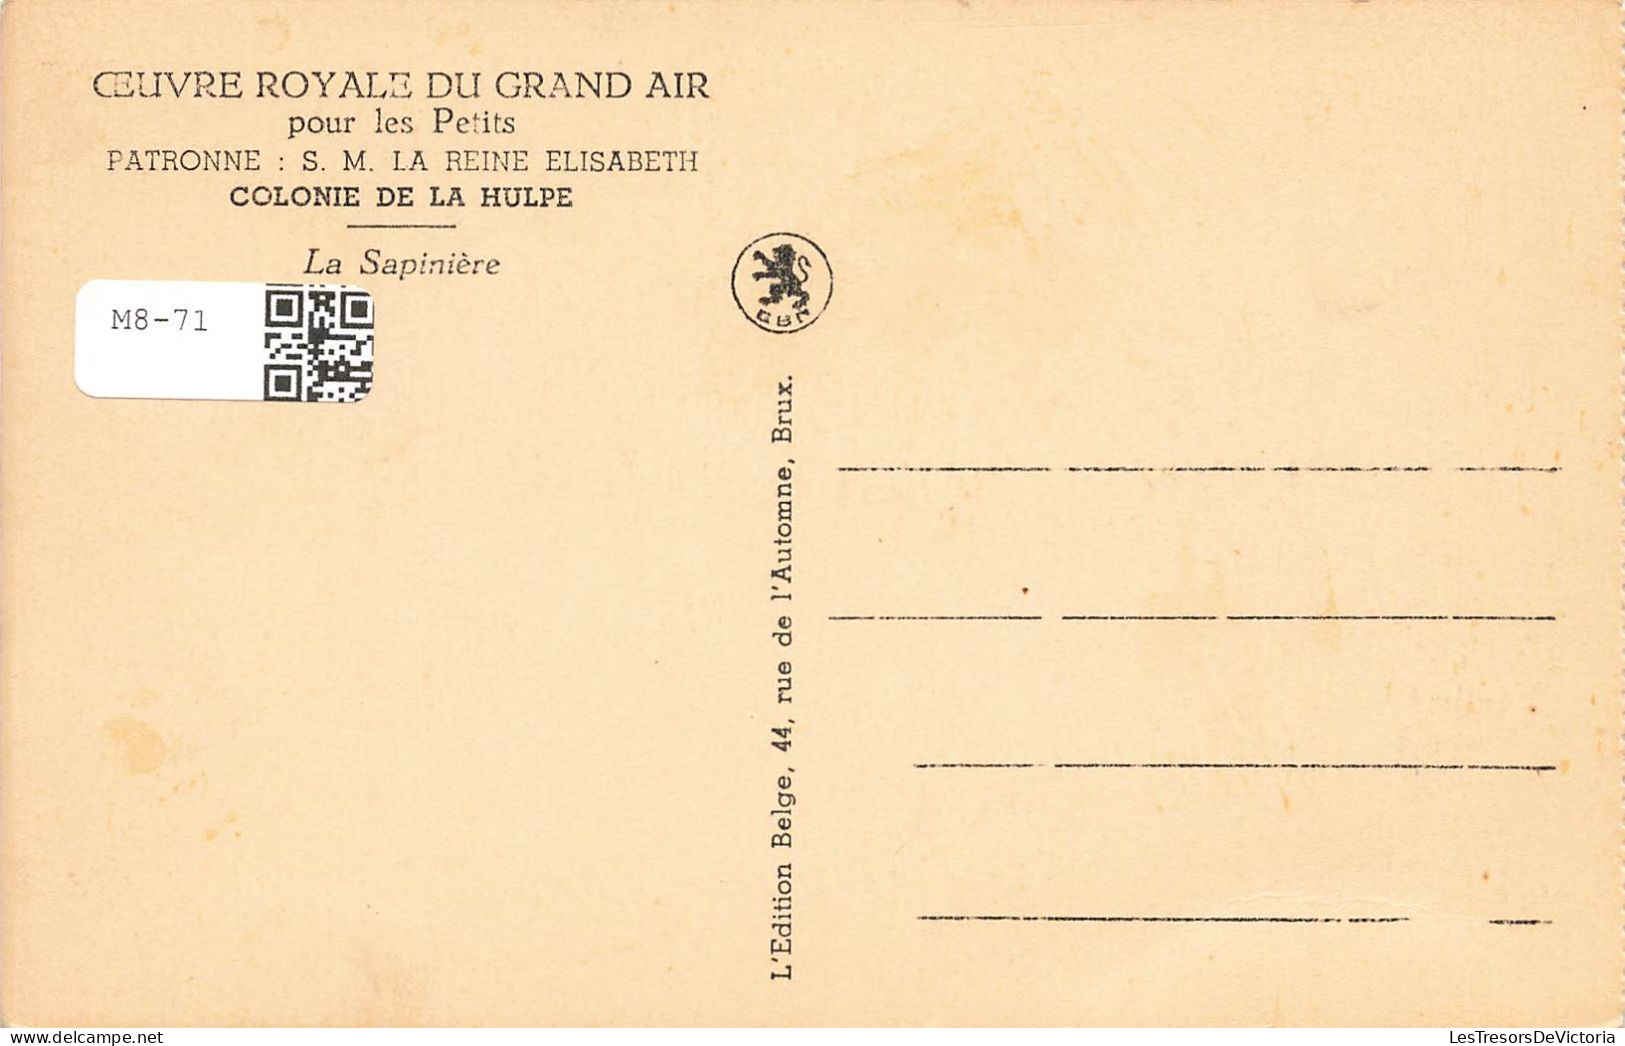 ENFANTS - Oeuvre Royale Du Grand Air Pour Les Petits - Patronne SM La Reine Elisabeth - Carte Postale Ancienne - Grupo De Niños Y Familias